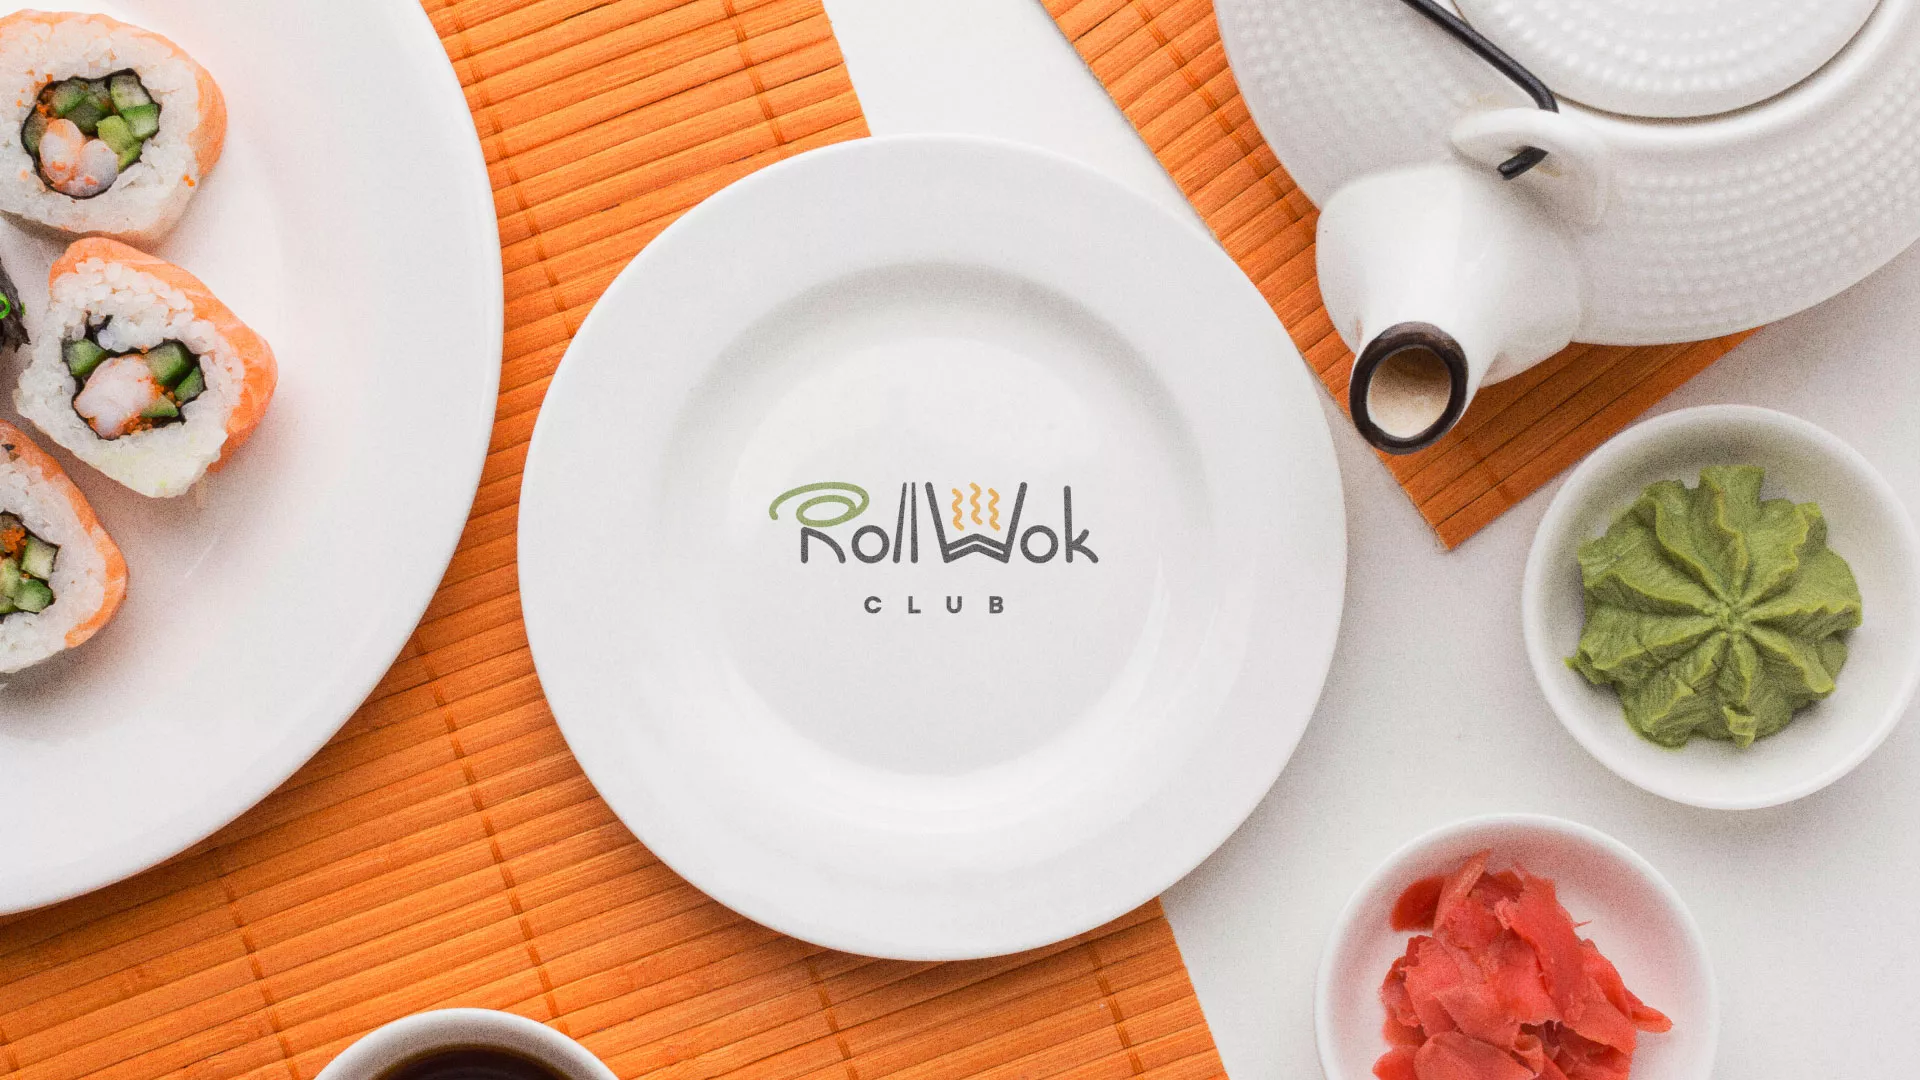 Разработка логотипа и фирменного стиля суши-бара «Roll Wok Club» в Морозовске